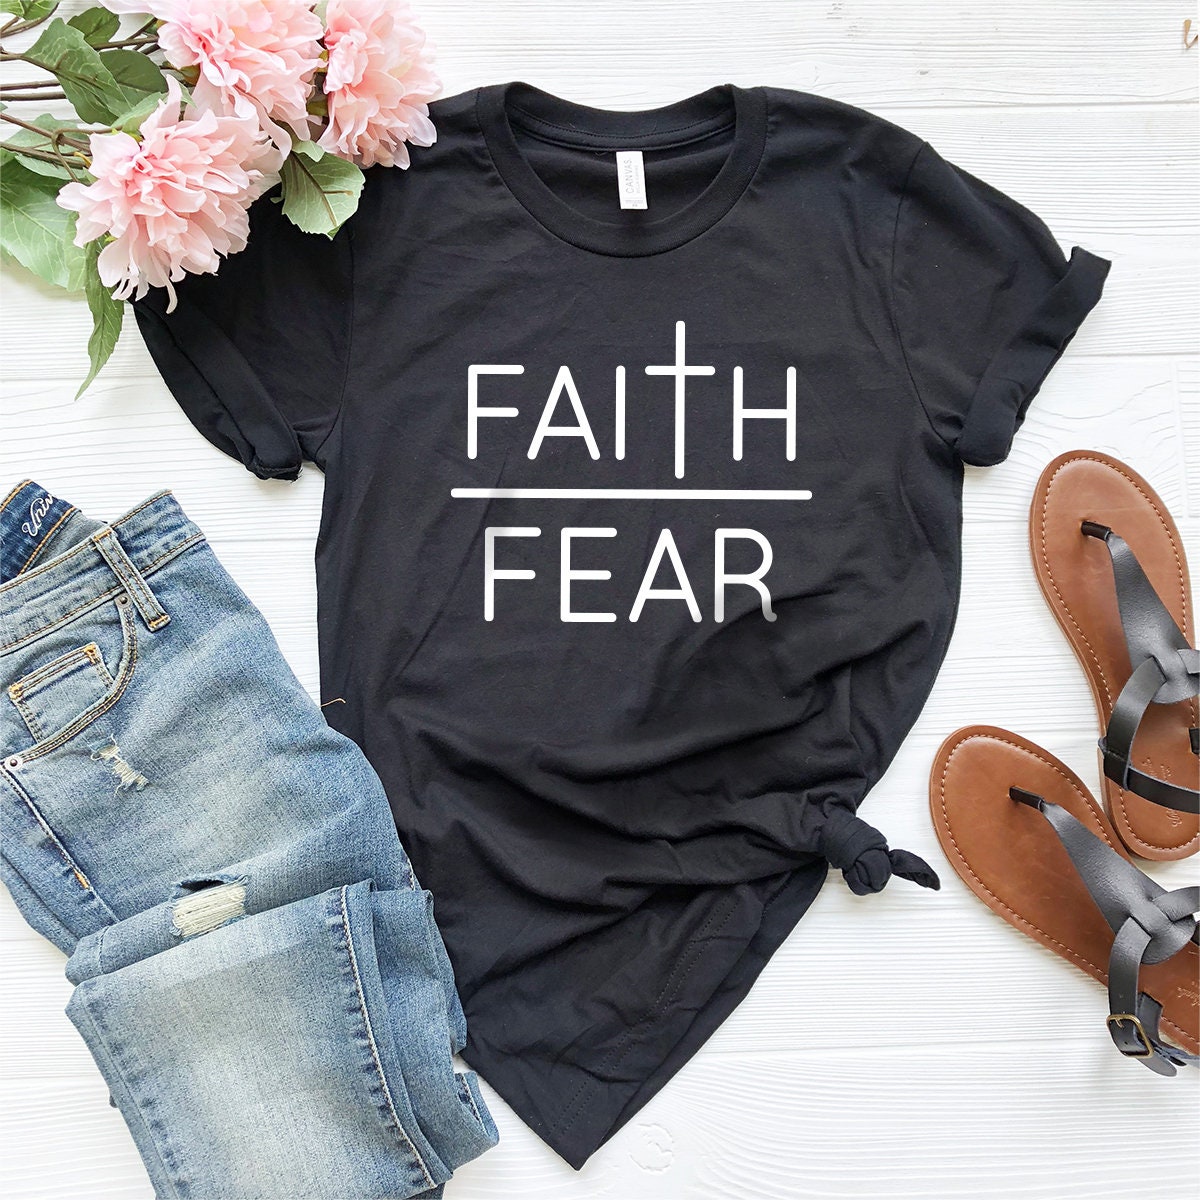 Faith Over Fear T-Shirt, Christian Shirt, Vertical Cross Shirt, Prayers Shirt, Inspirational Christian Tee, Religious Shirt - Fastdeliverytees.com